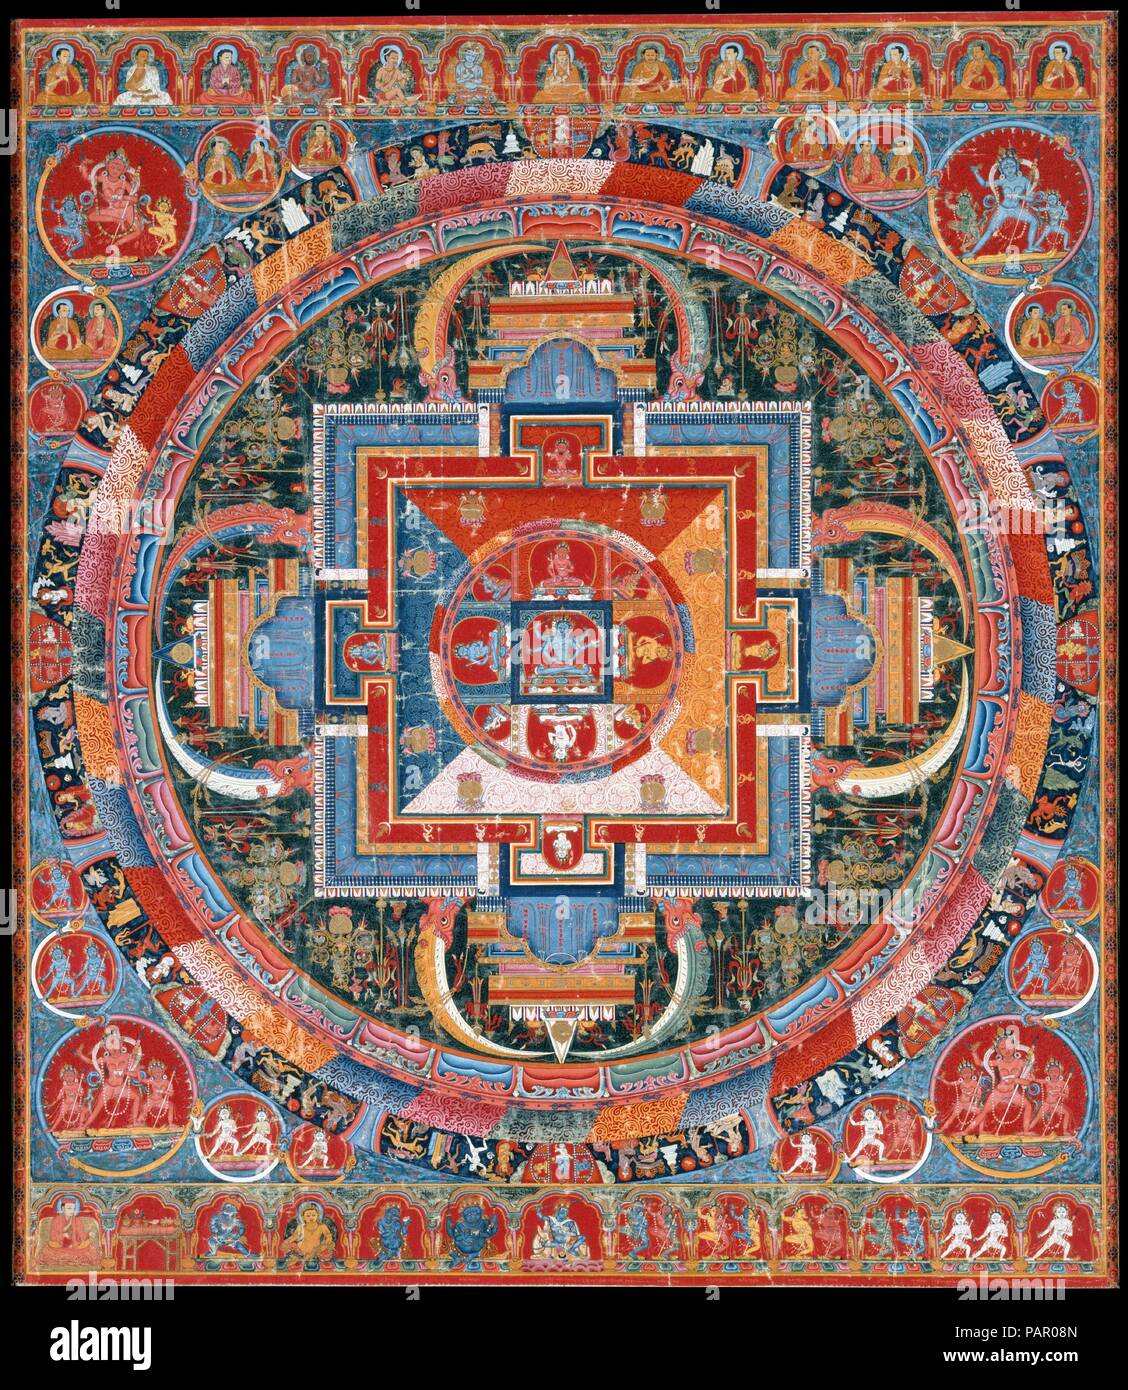 Mandala de Jnanadakini. Culture : le Tibet. Dimensions : Image : 29 1/2 x 33 in. (74,9 x 83,8 cm) avec montage de textiles traditionnels : 54 1/8 x 36 1/4 in. (137,5 x 92,1 cm) Encadré : 49 1/2 po. × 37 13/16 in. × 1 in. (125,7 × 96 × 2,5 cm). Date : fin du xive siècle. Le centre de six-déesse armés (devi), Jnanadakini, est entourée de huit émanations--représentations de la devi qui correspondent aux couleurs du mandala's quatre quadrants directionnels. Quatre déesses protectrices supplémentaires s'asseoir dans les passerelles. Entourant le mandala sont des cercles concentriques qui contiennent des pétales de lotus, vajras, flammes, et Banque D'Images